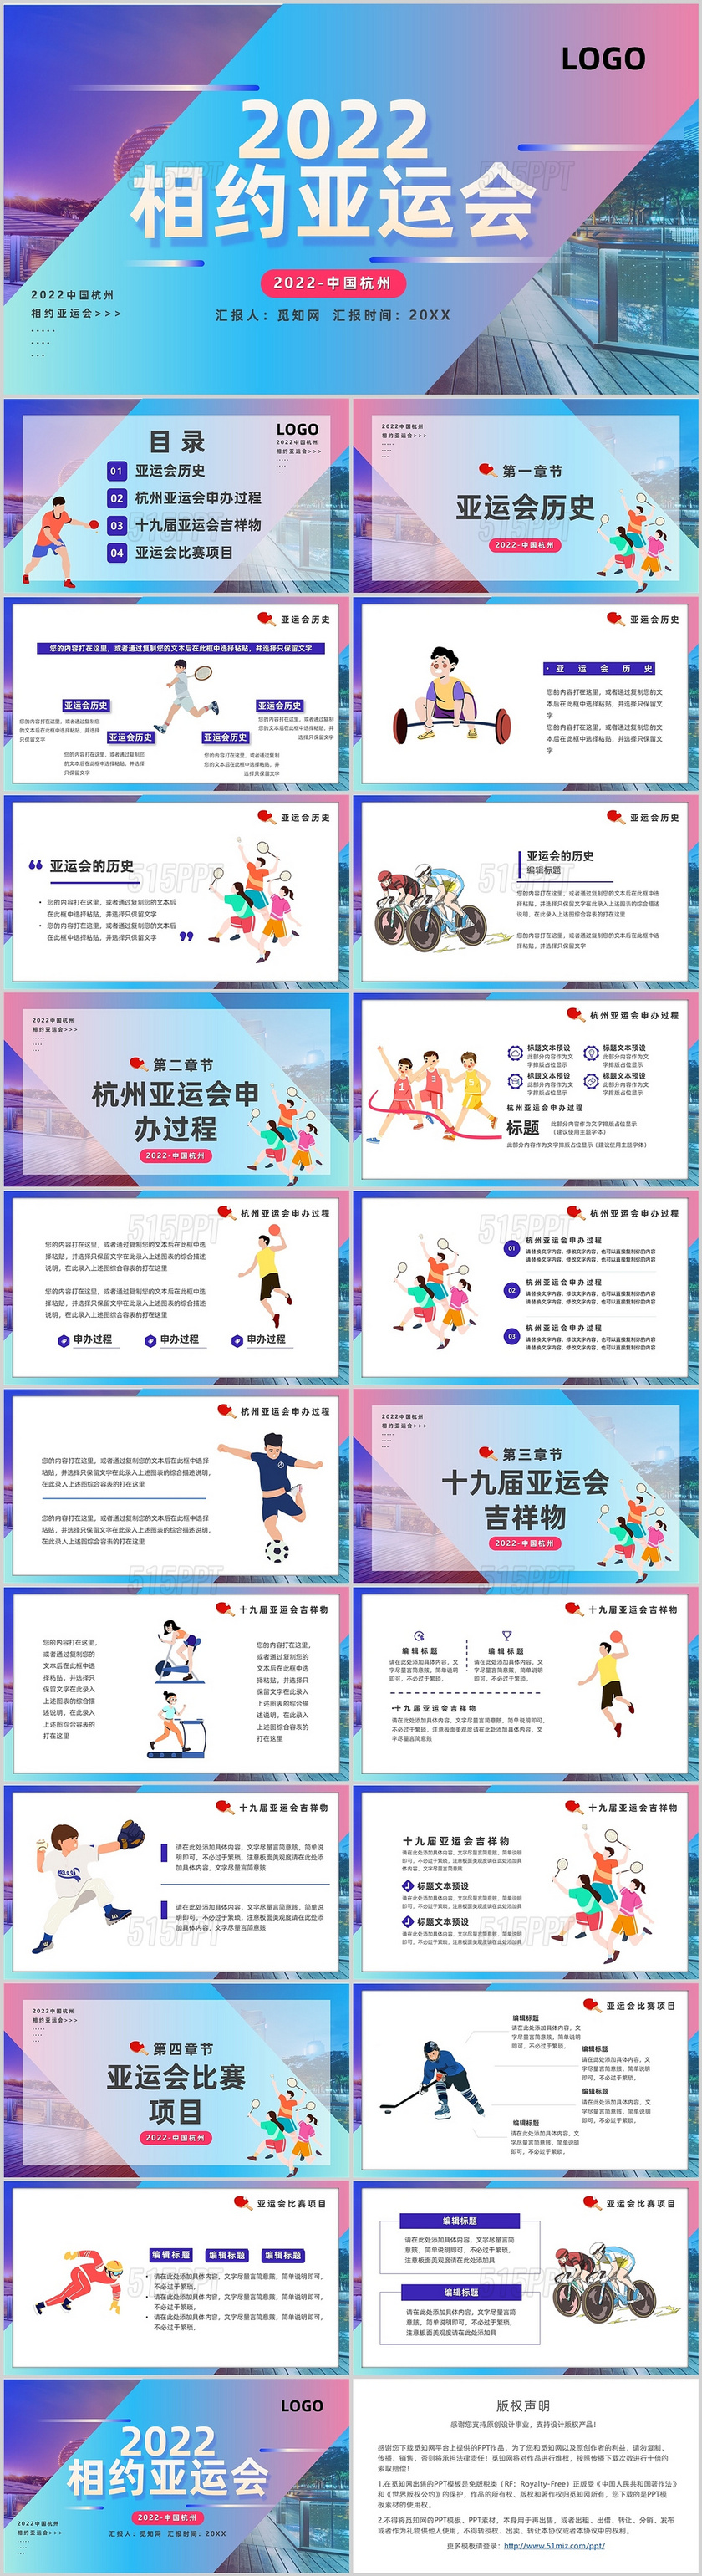 蓝紫色运动风2022相约亚运会主题班会PPT模板杭州亚运会节日